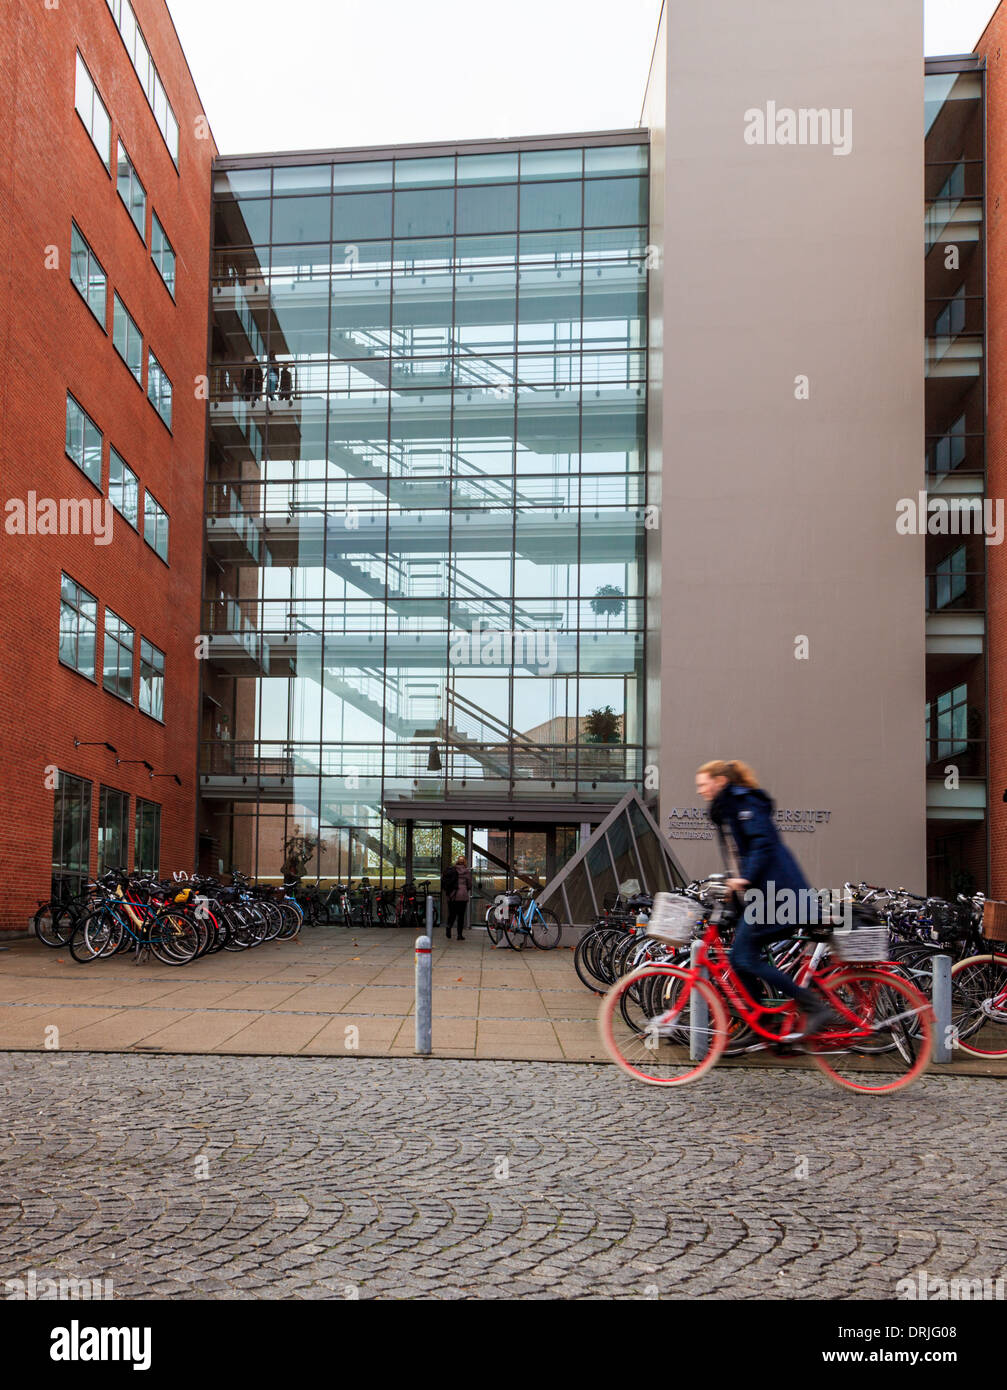 Aarhus oder Aarhus Universität in Dänemark mit weiblichen Radfahrer auf roten Fahrrad Stockfoto